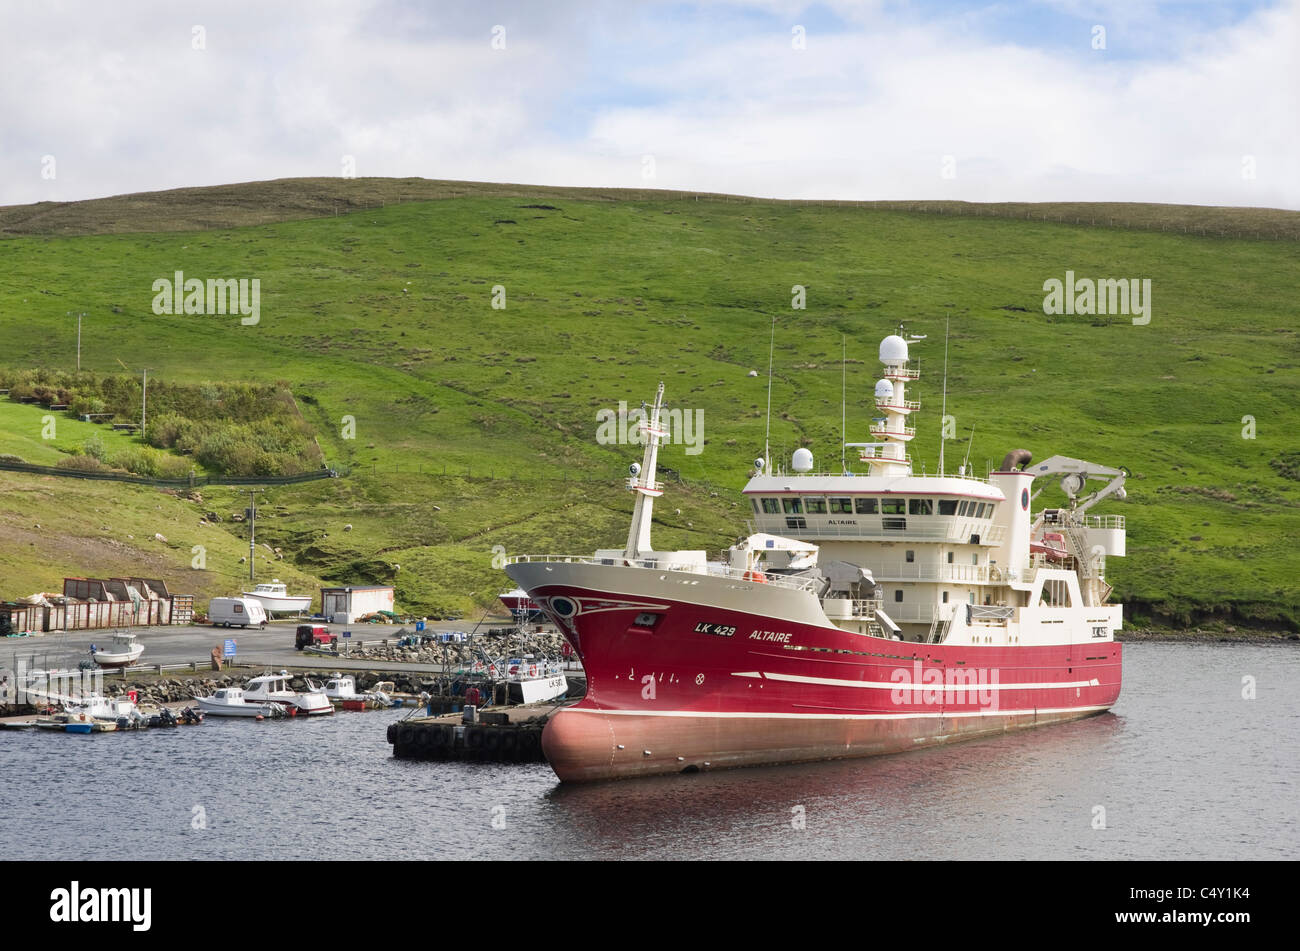 Mare pelagiche Pescherecci a strascico Altaire ormeggiata in porto. Collafirth, Northmavine, Isole Shetland Scozia, Regno Unito, Gran Bretagna. Foto Stock